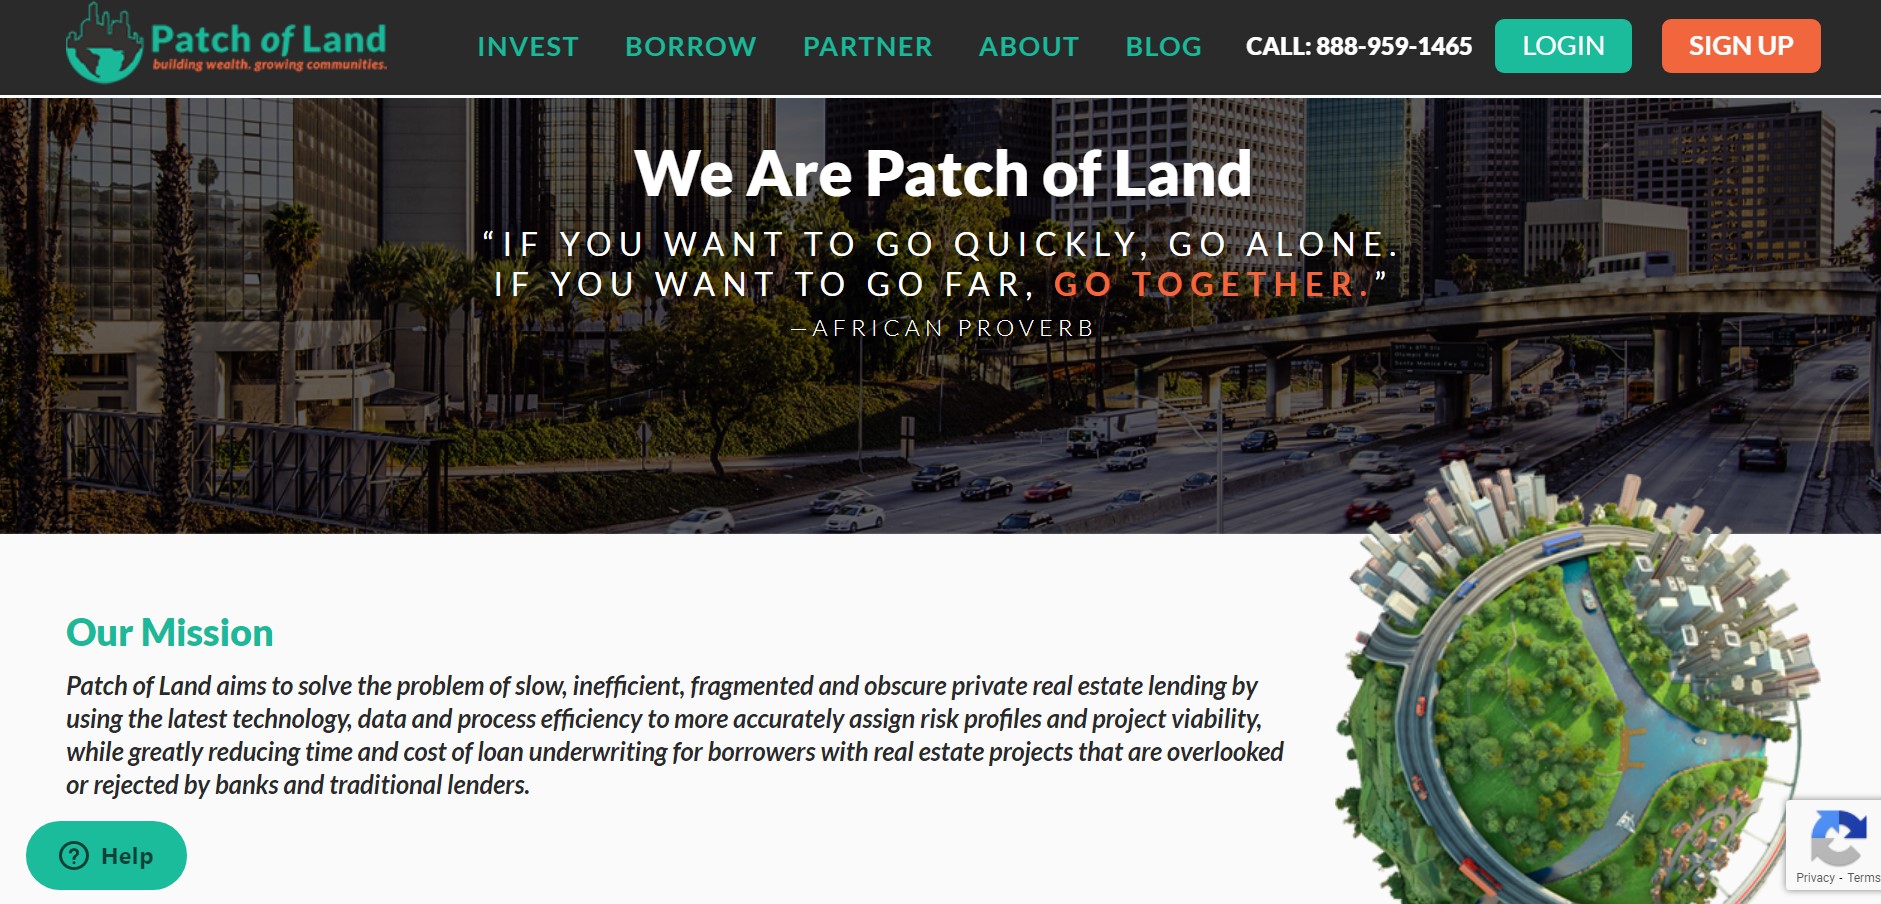 Patch of Land ist eine unserer beliebtesten Crowdfunding-Websites.